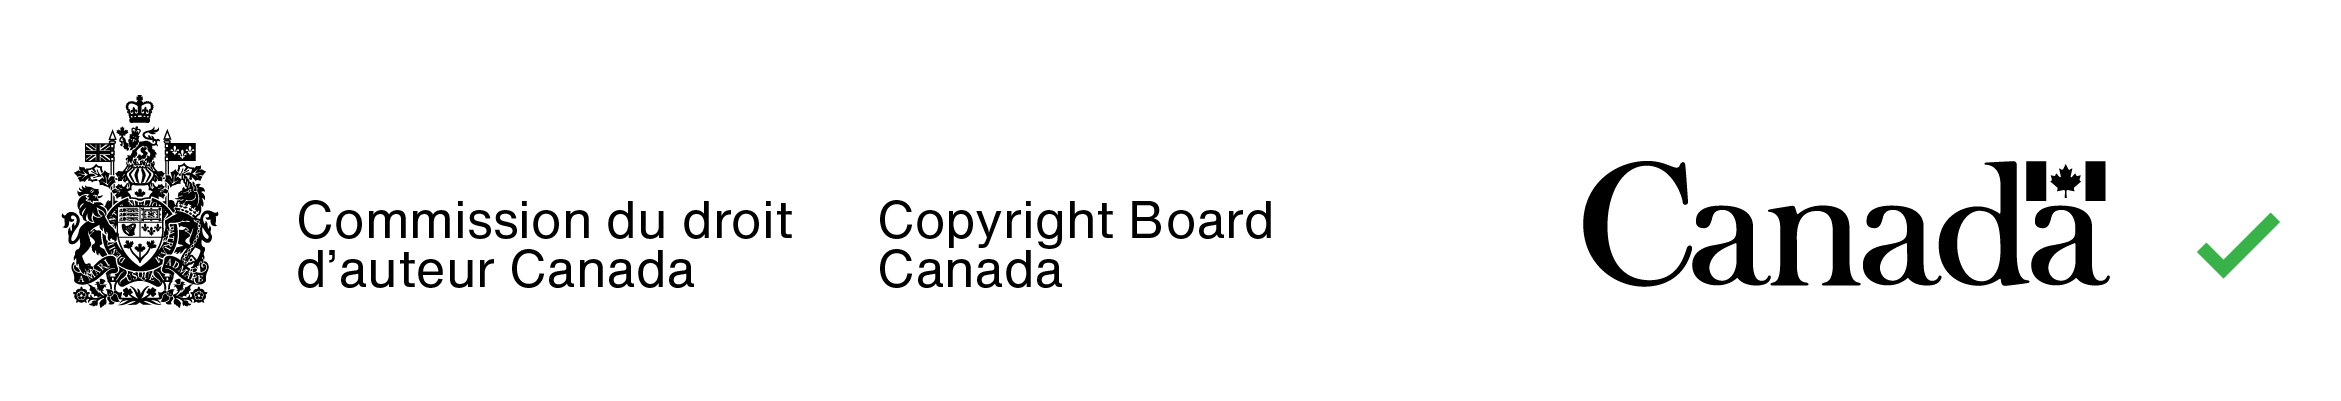 Exemple du bon jumelage de couleurs (le texte dans la signature avec armoiries et celui dans le mot-symbole « Canada » sont de la même couleur).